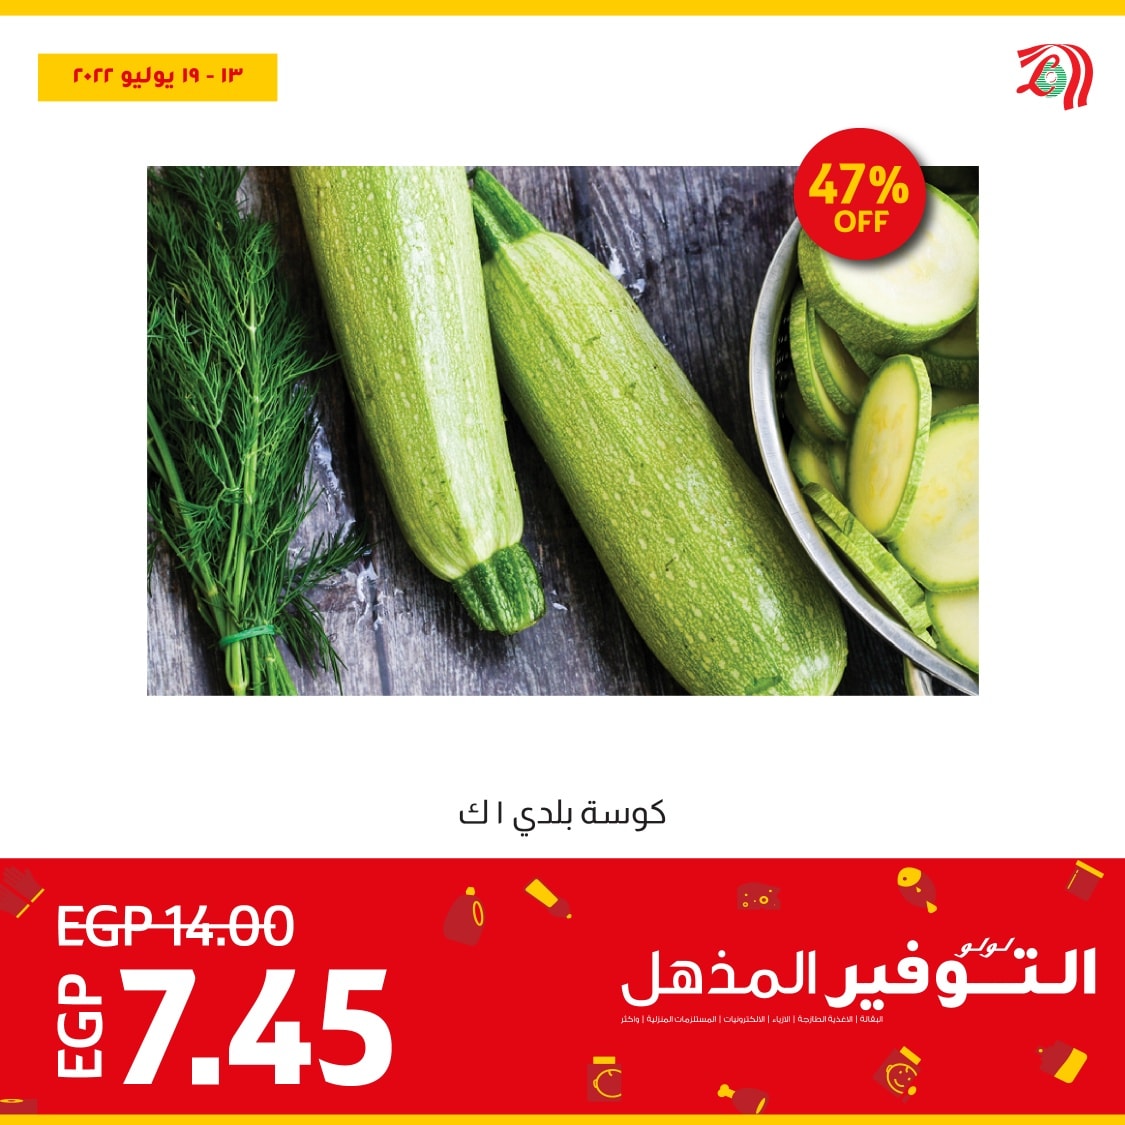 اشتري افضل الخضروات والفاكهة الطازجة النهاردة وبأقل سعر في عروض لولو هايبر ماركت مصر ولغاية يوم 19 يوليو 2022 4